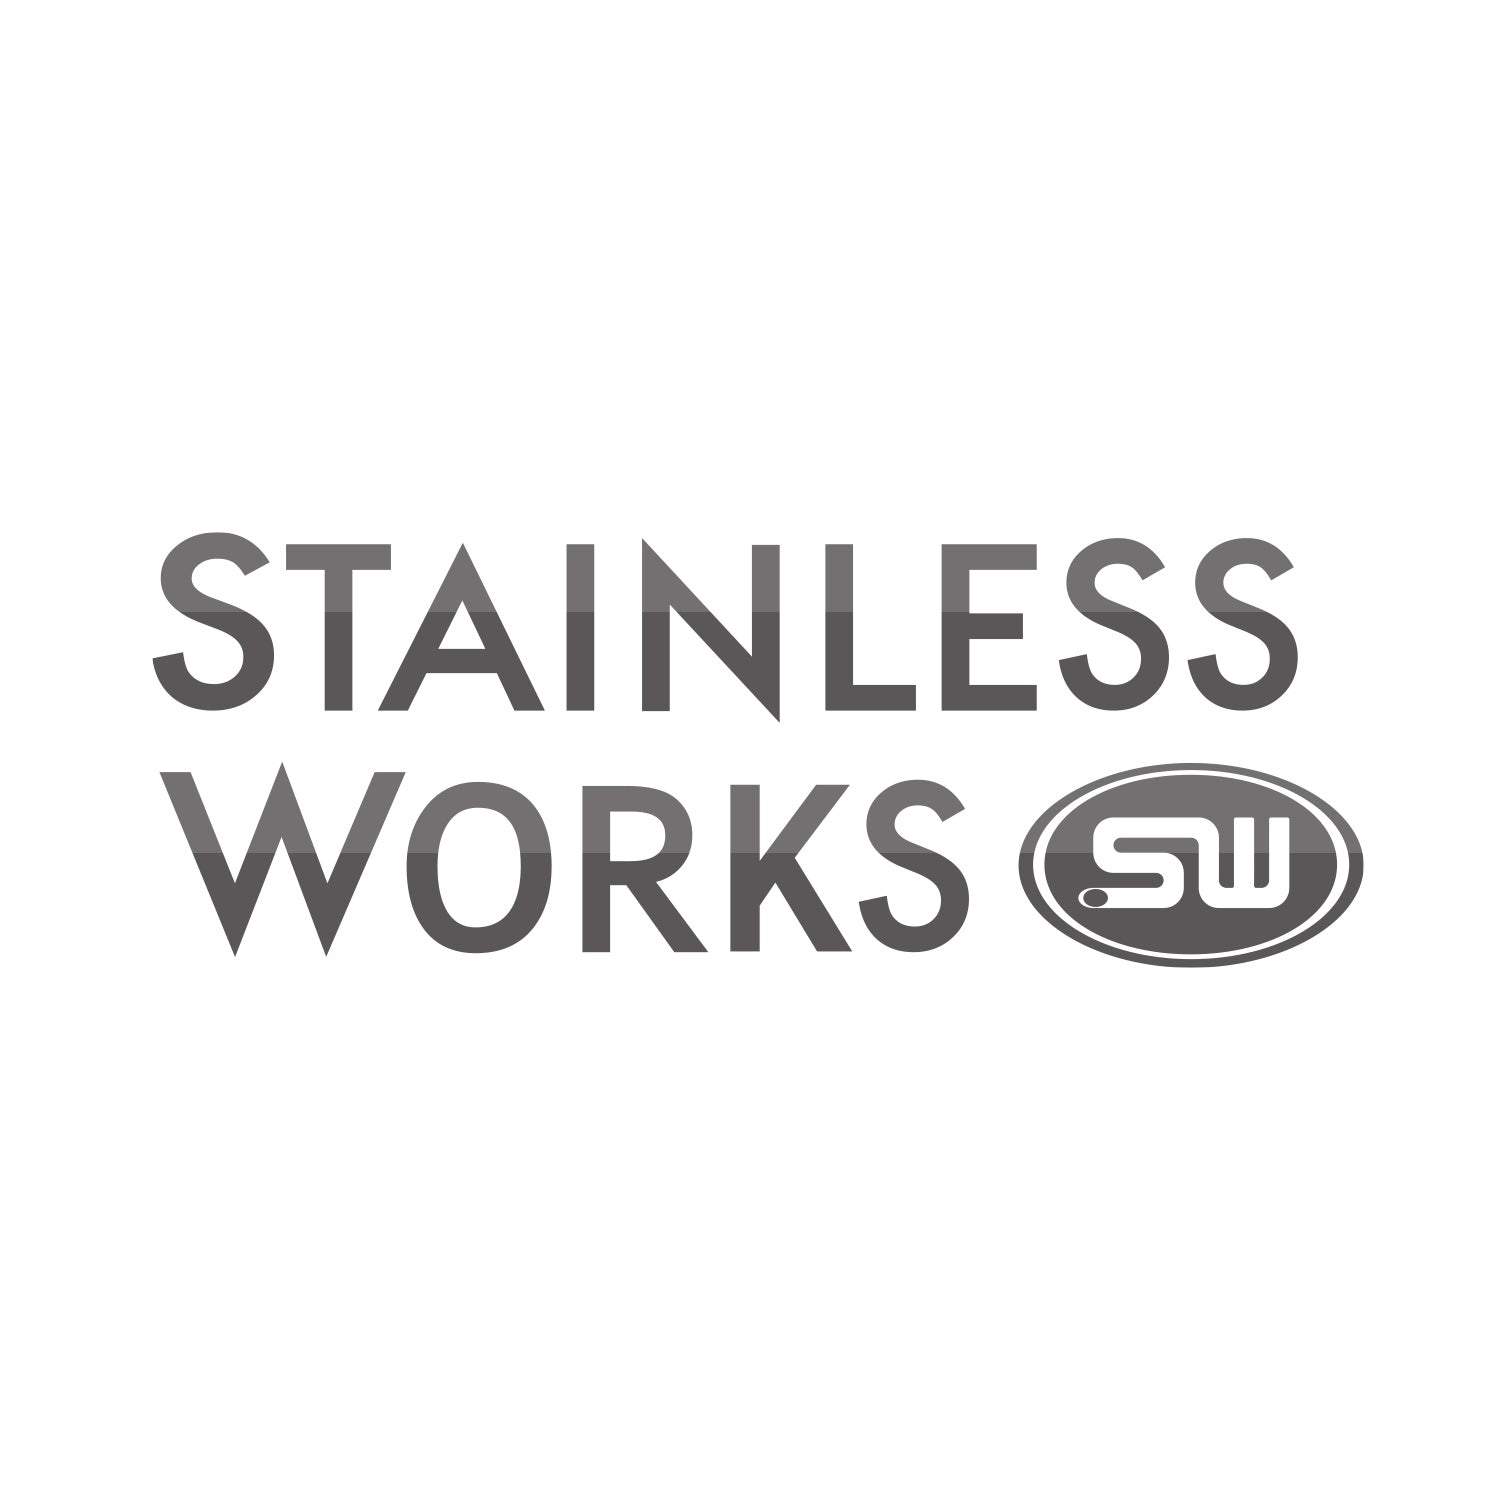 stainless-works-logo-1.jpg